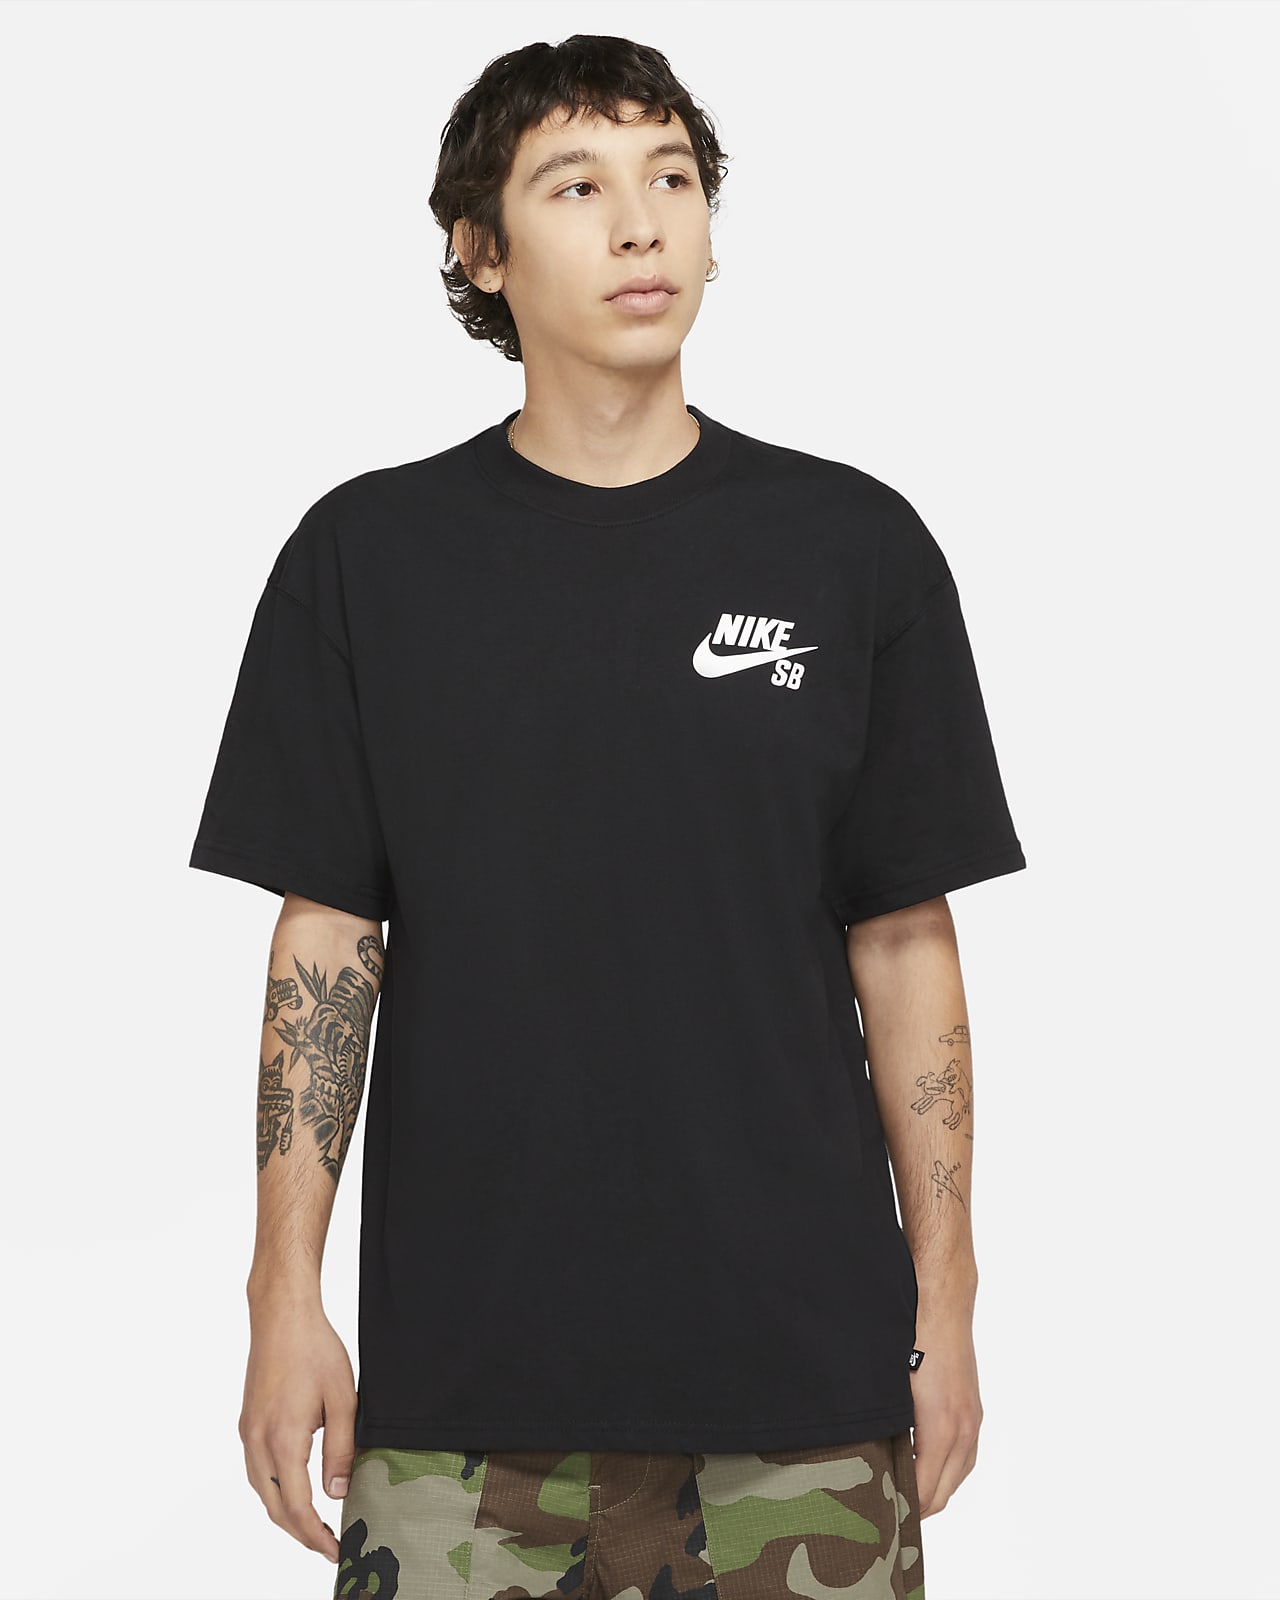  Skateboard T-shirts